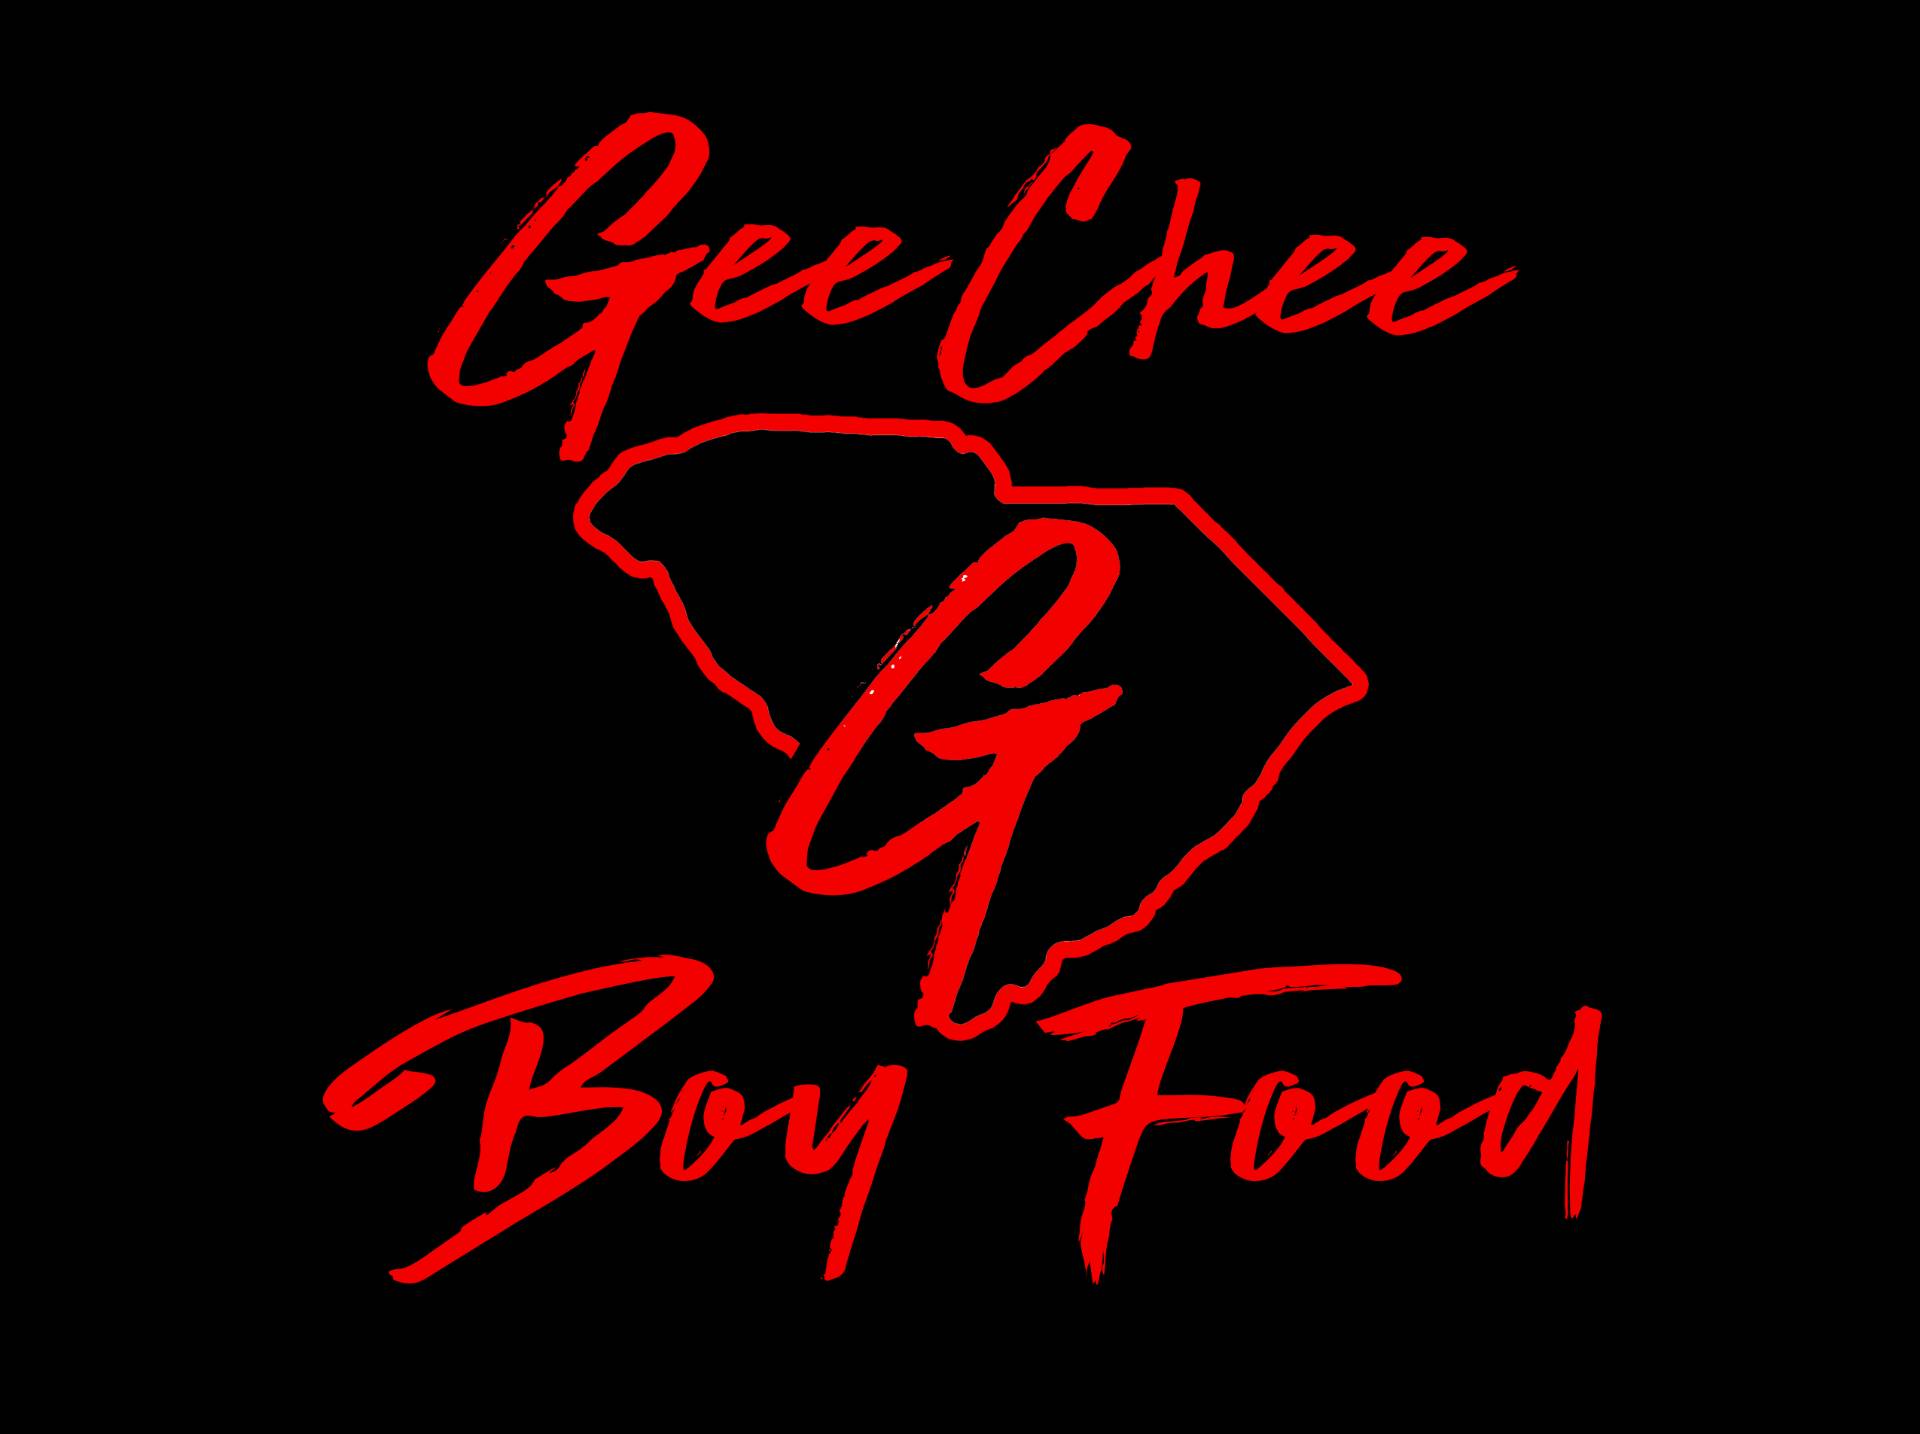 Geechee Boy Food LLC